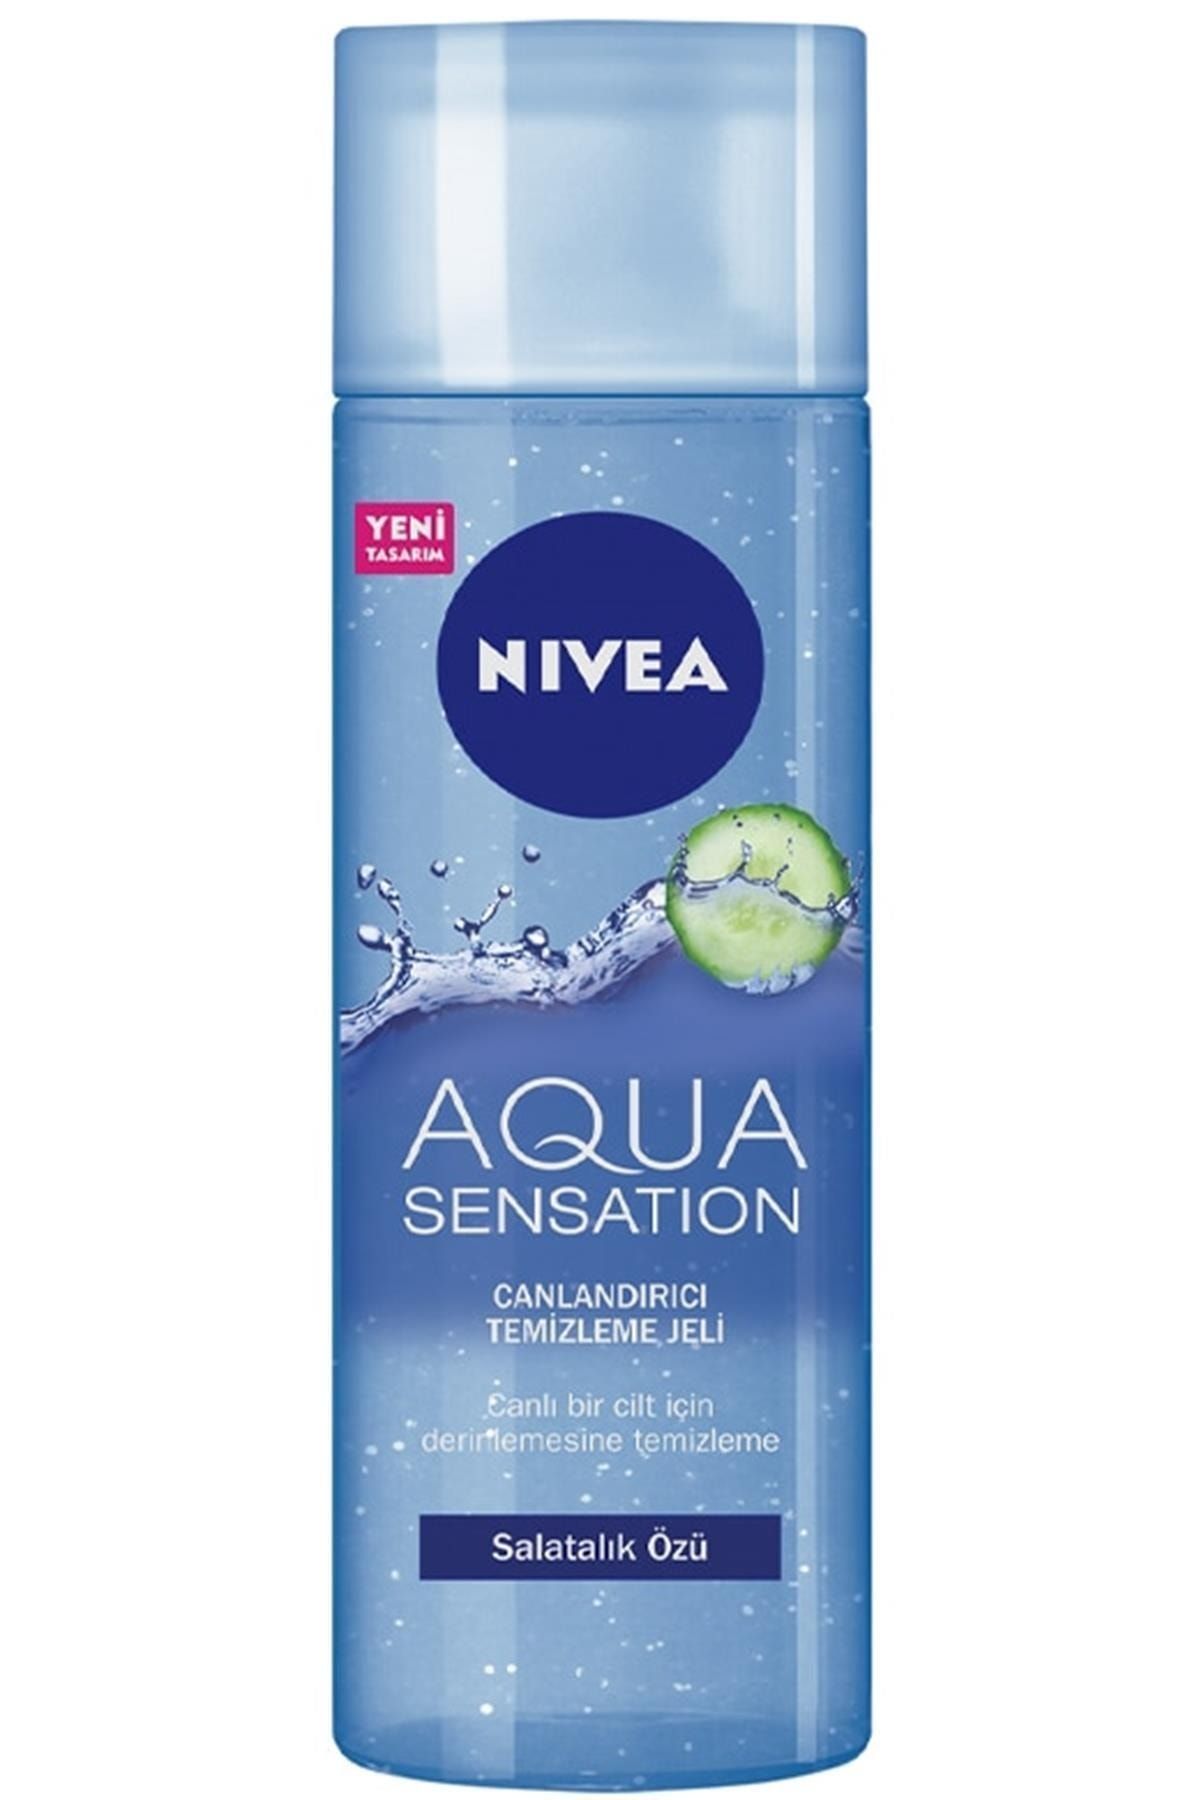 NIVEA Aqua Sensation Normal/karma Ciltler Için Canlandırıcı Yüz Temizleme Jeli 200 ml